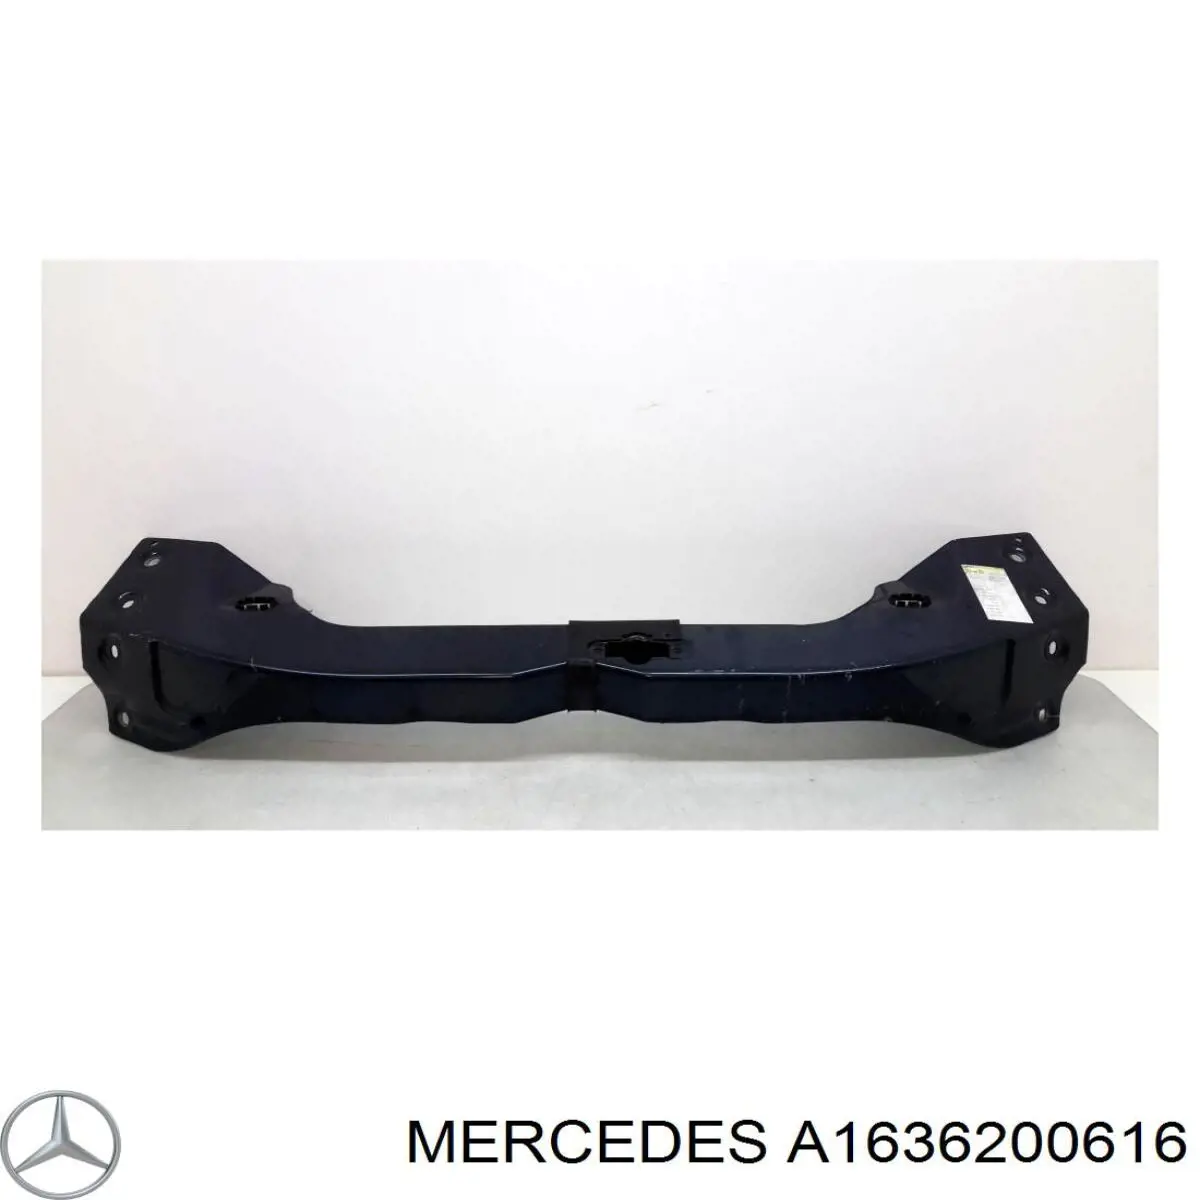 Suporte superior do radiador (painel de montagem de fixação das luzes) para Mercedes ML/GLE (W163)